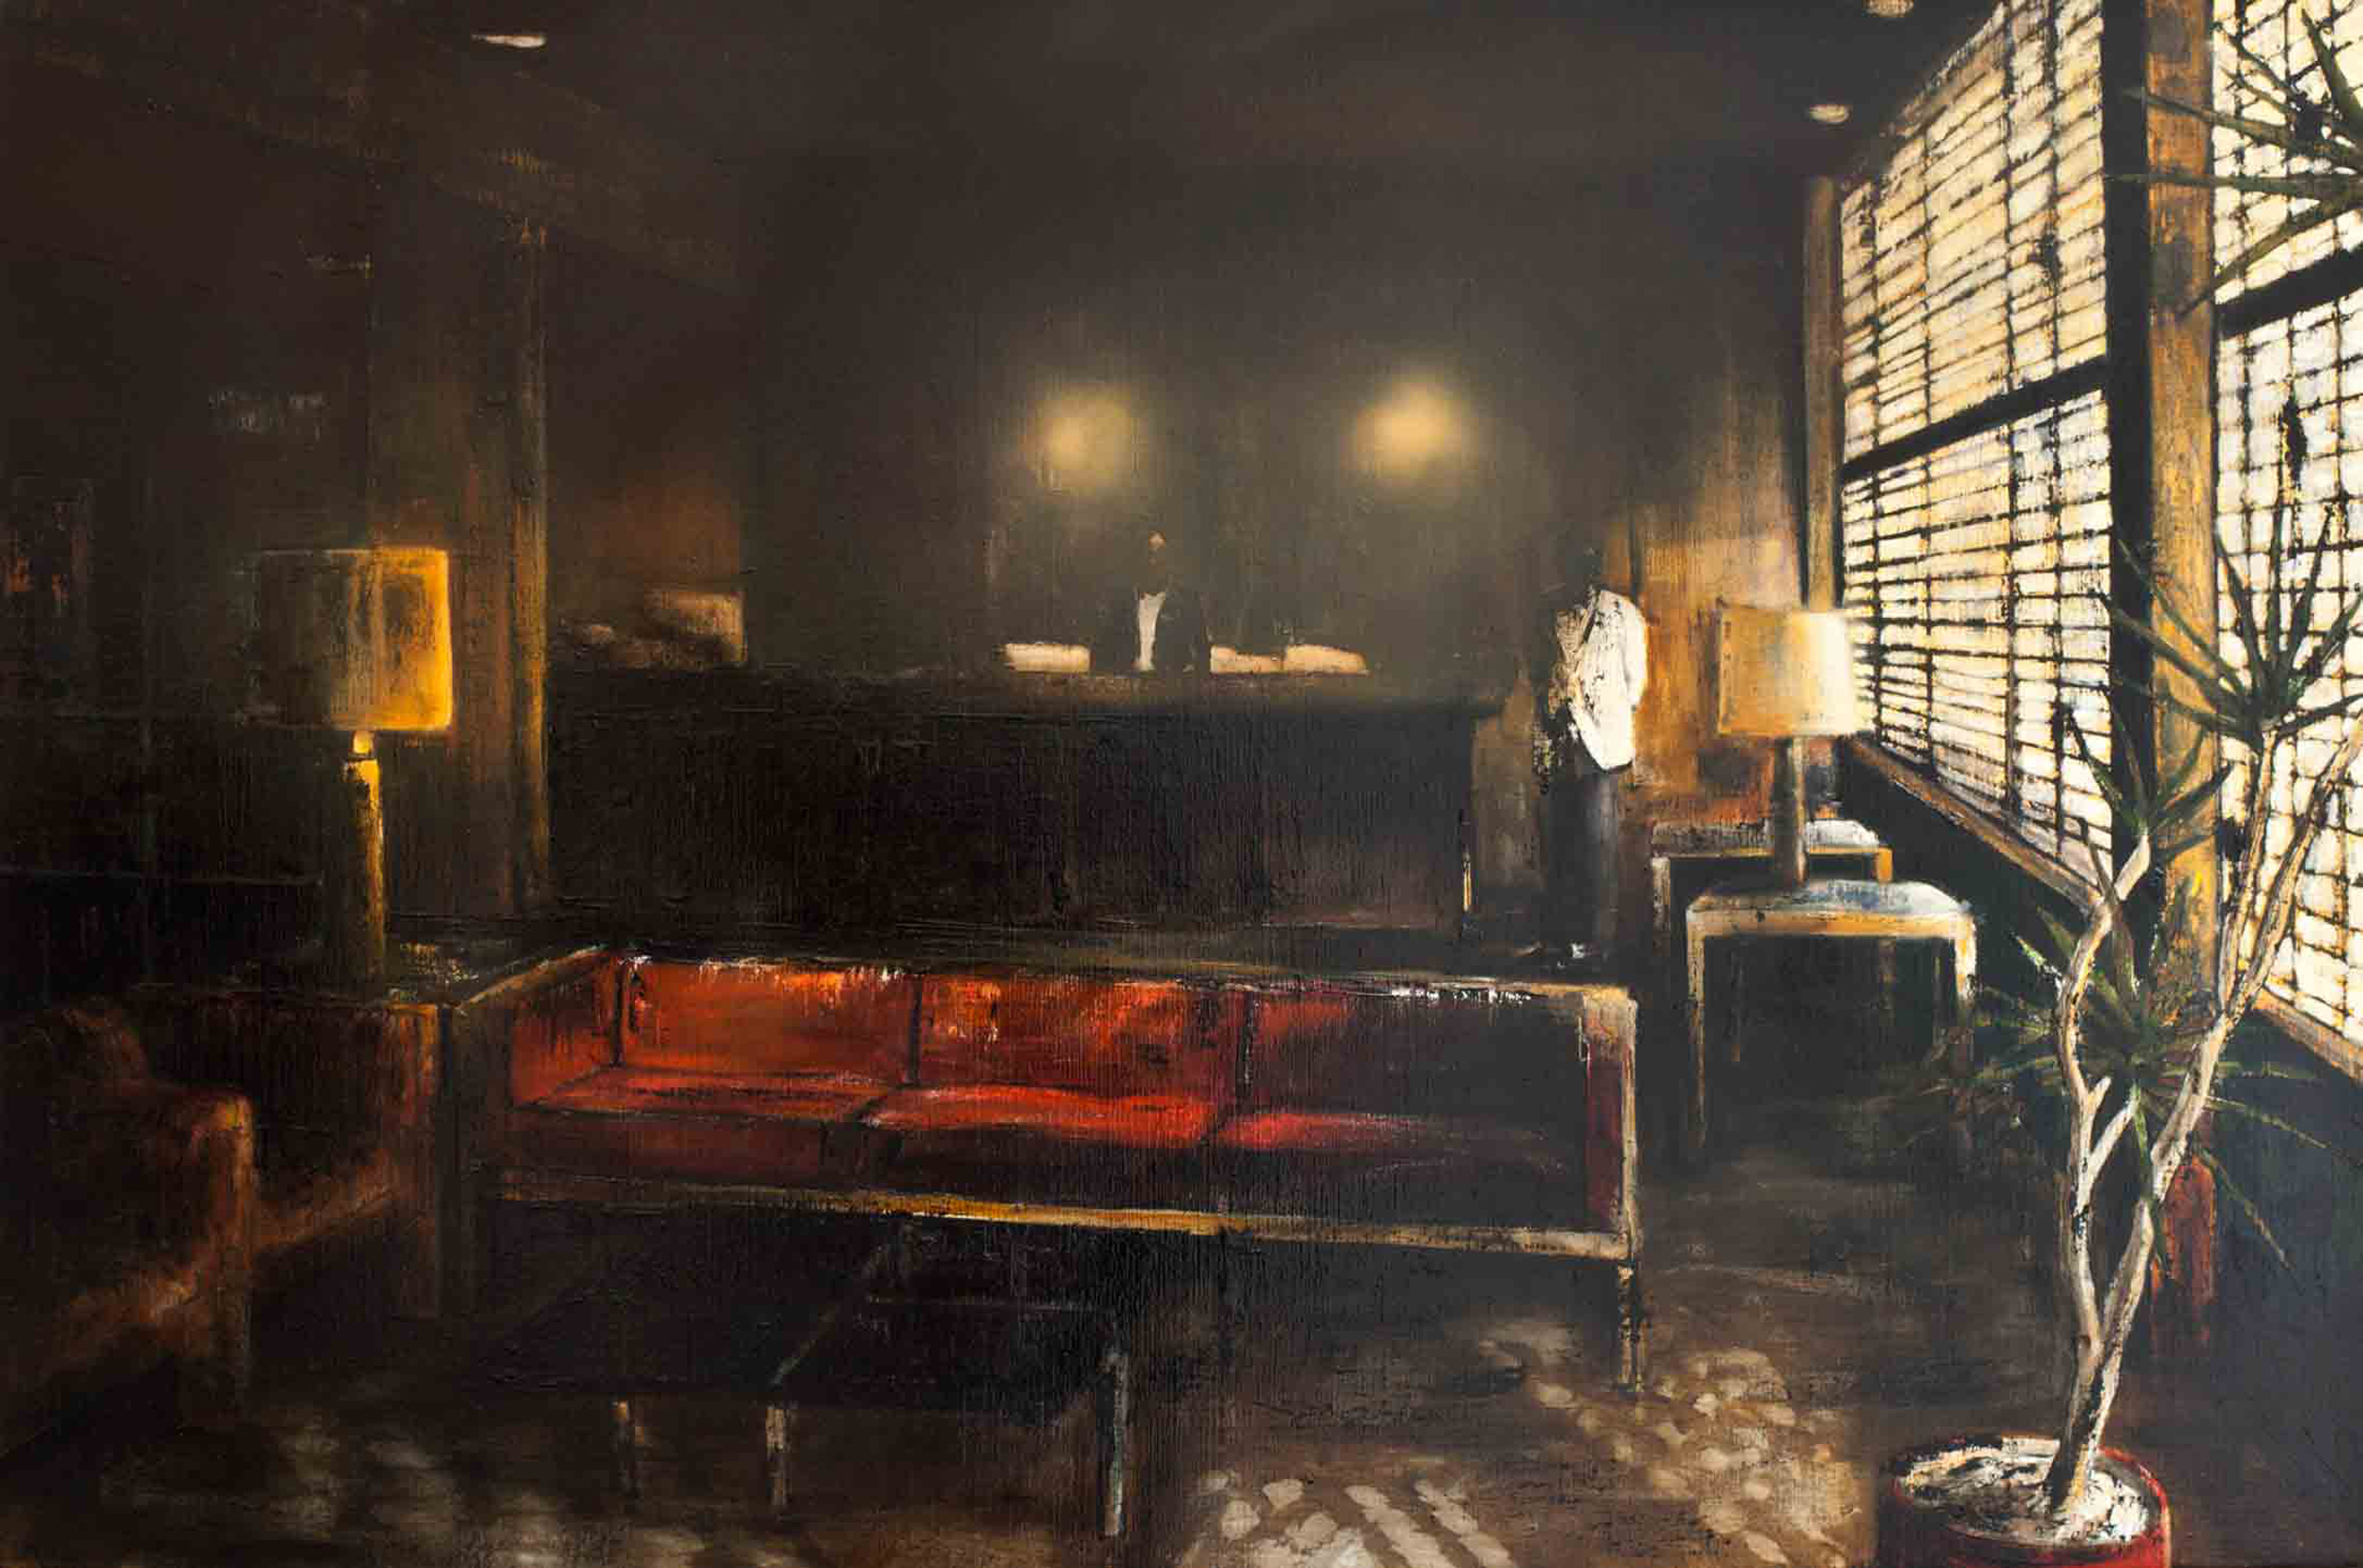 'I Remain In The Dark' Jarik Jongman Oil on Canvas, 120cm x 180cm, 2013